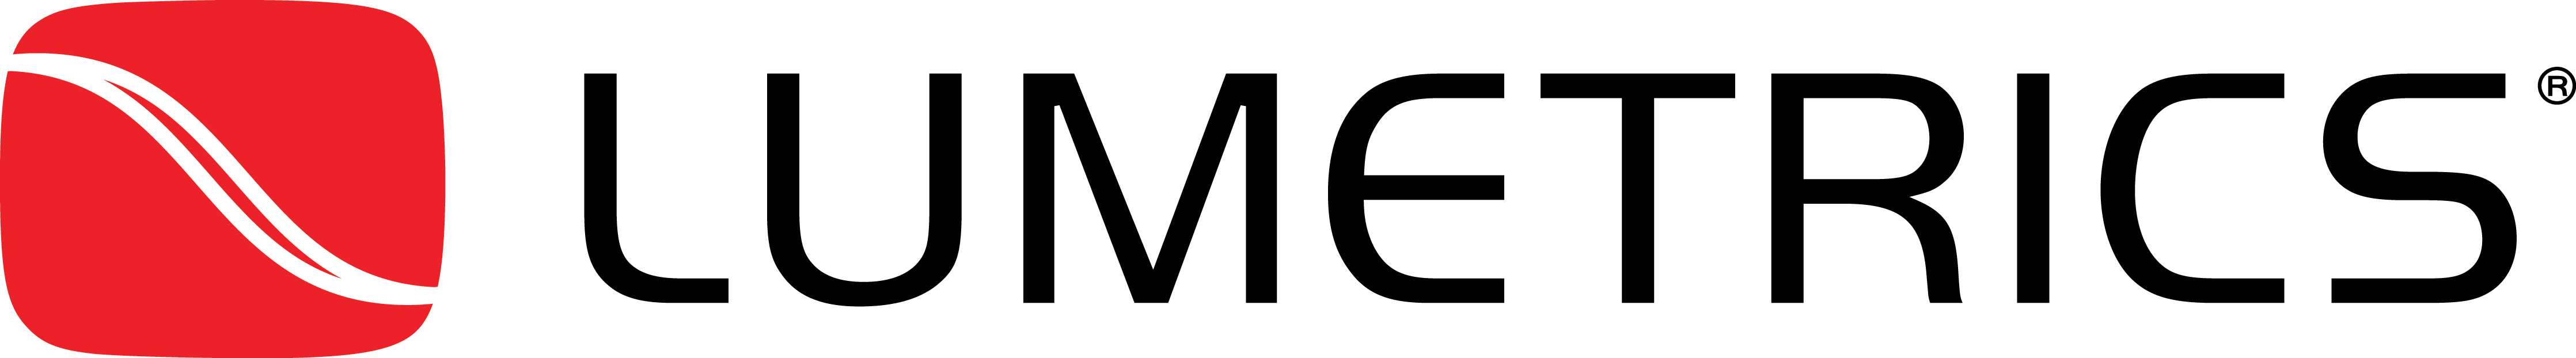 Lumetrics Logo Black Lettering Web Use.png